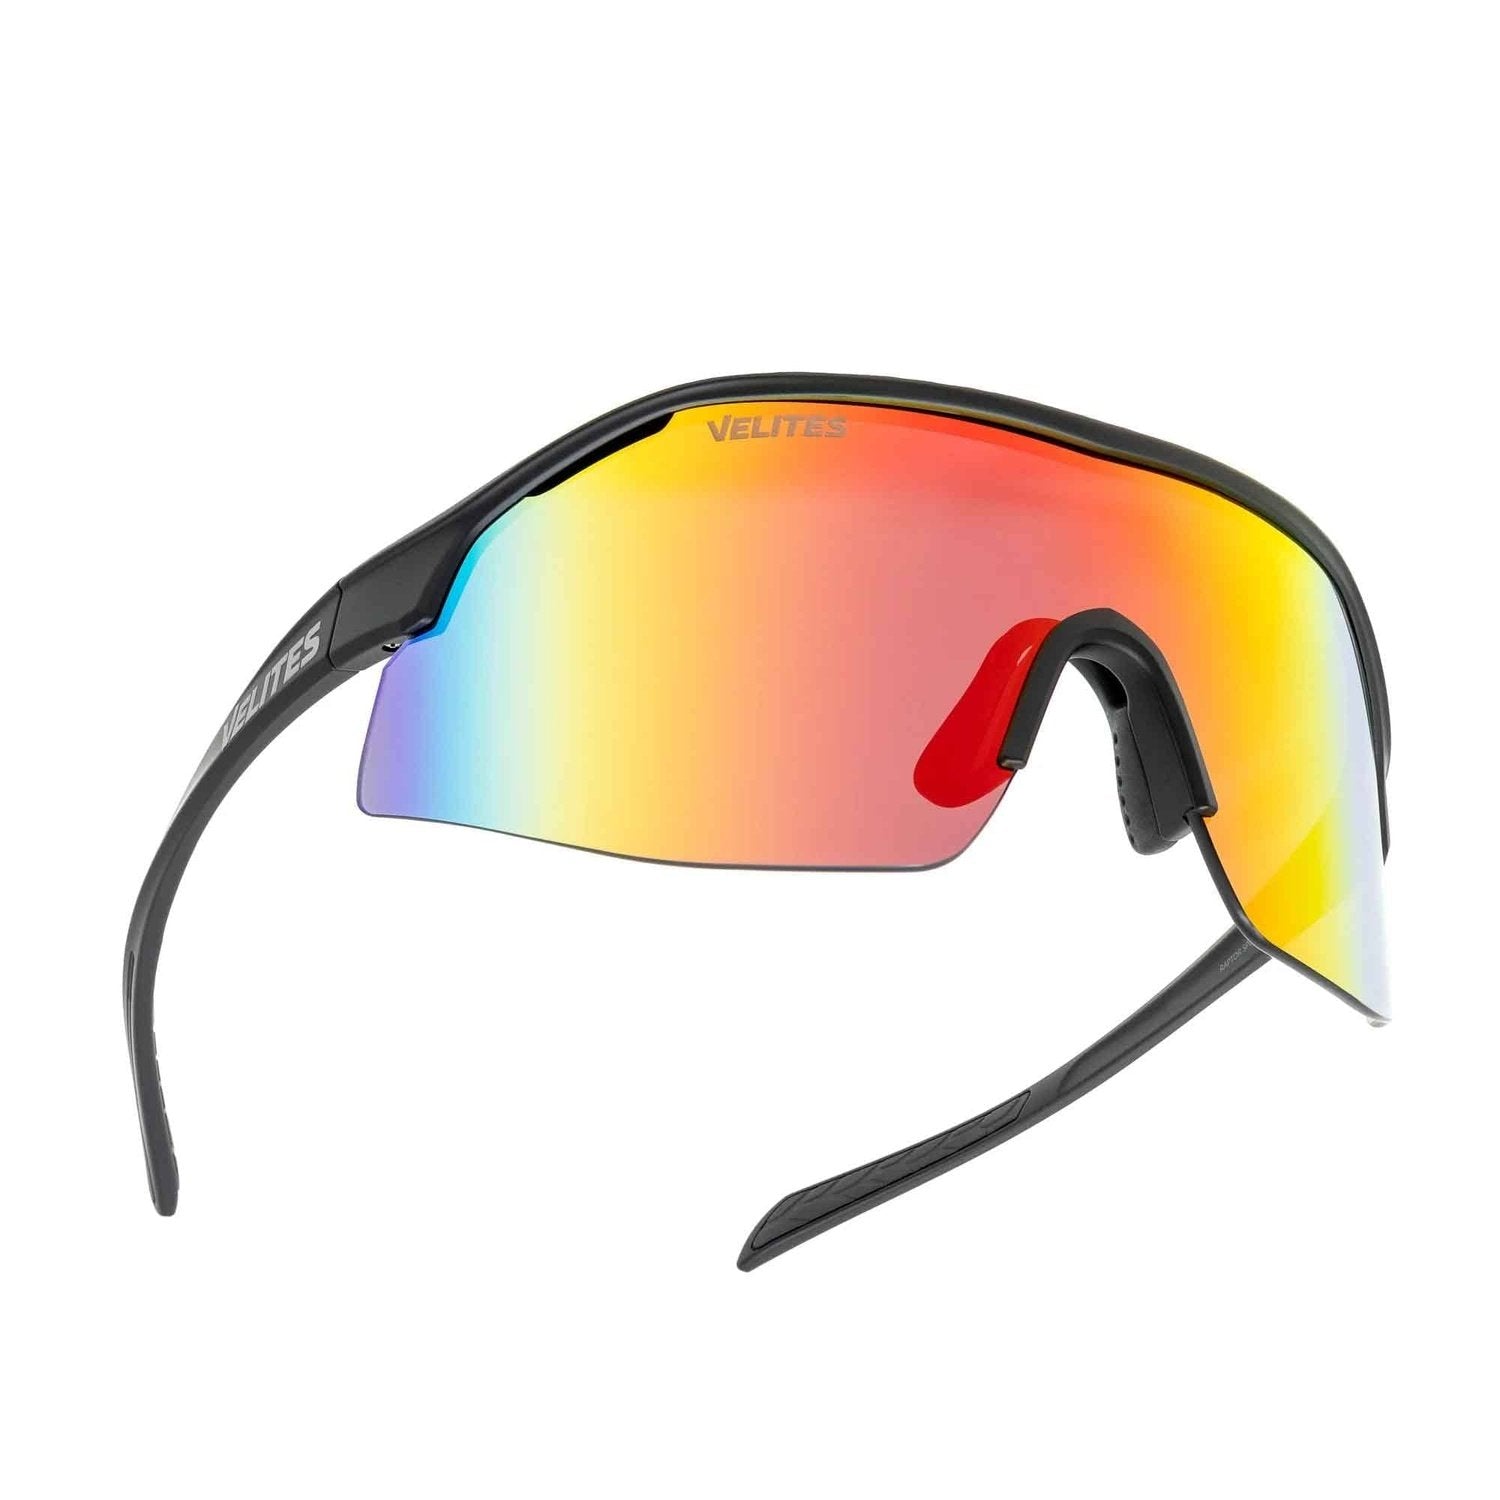 Velites Sonnenbrille "Raptor Sport" Schwarz Orange kaufen bei HighPowered.ch